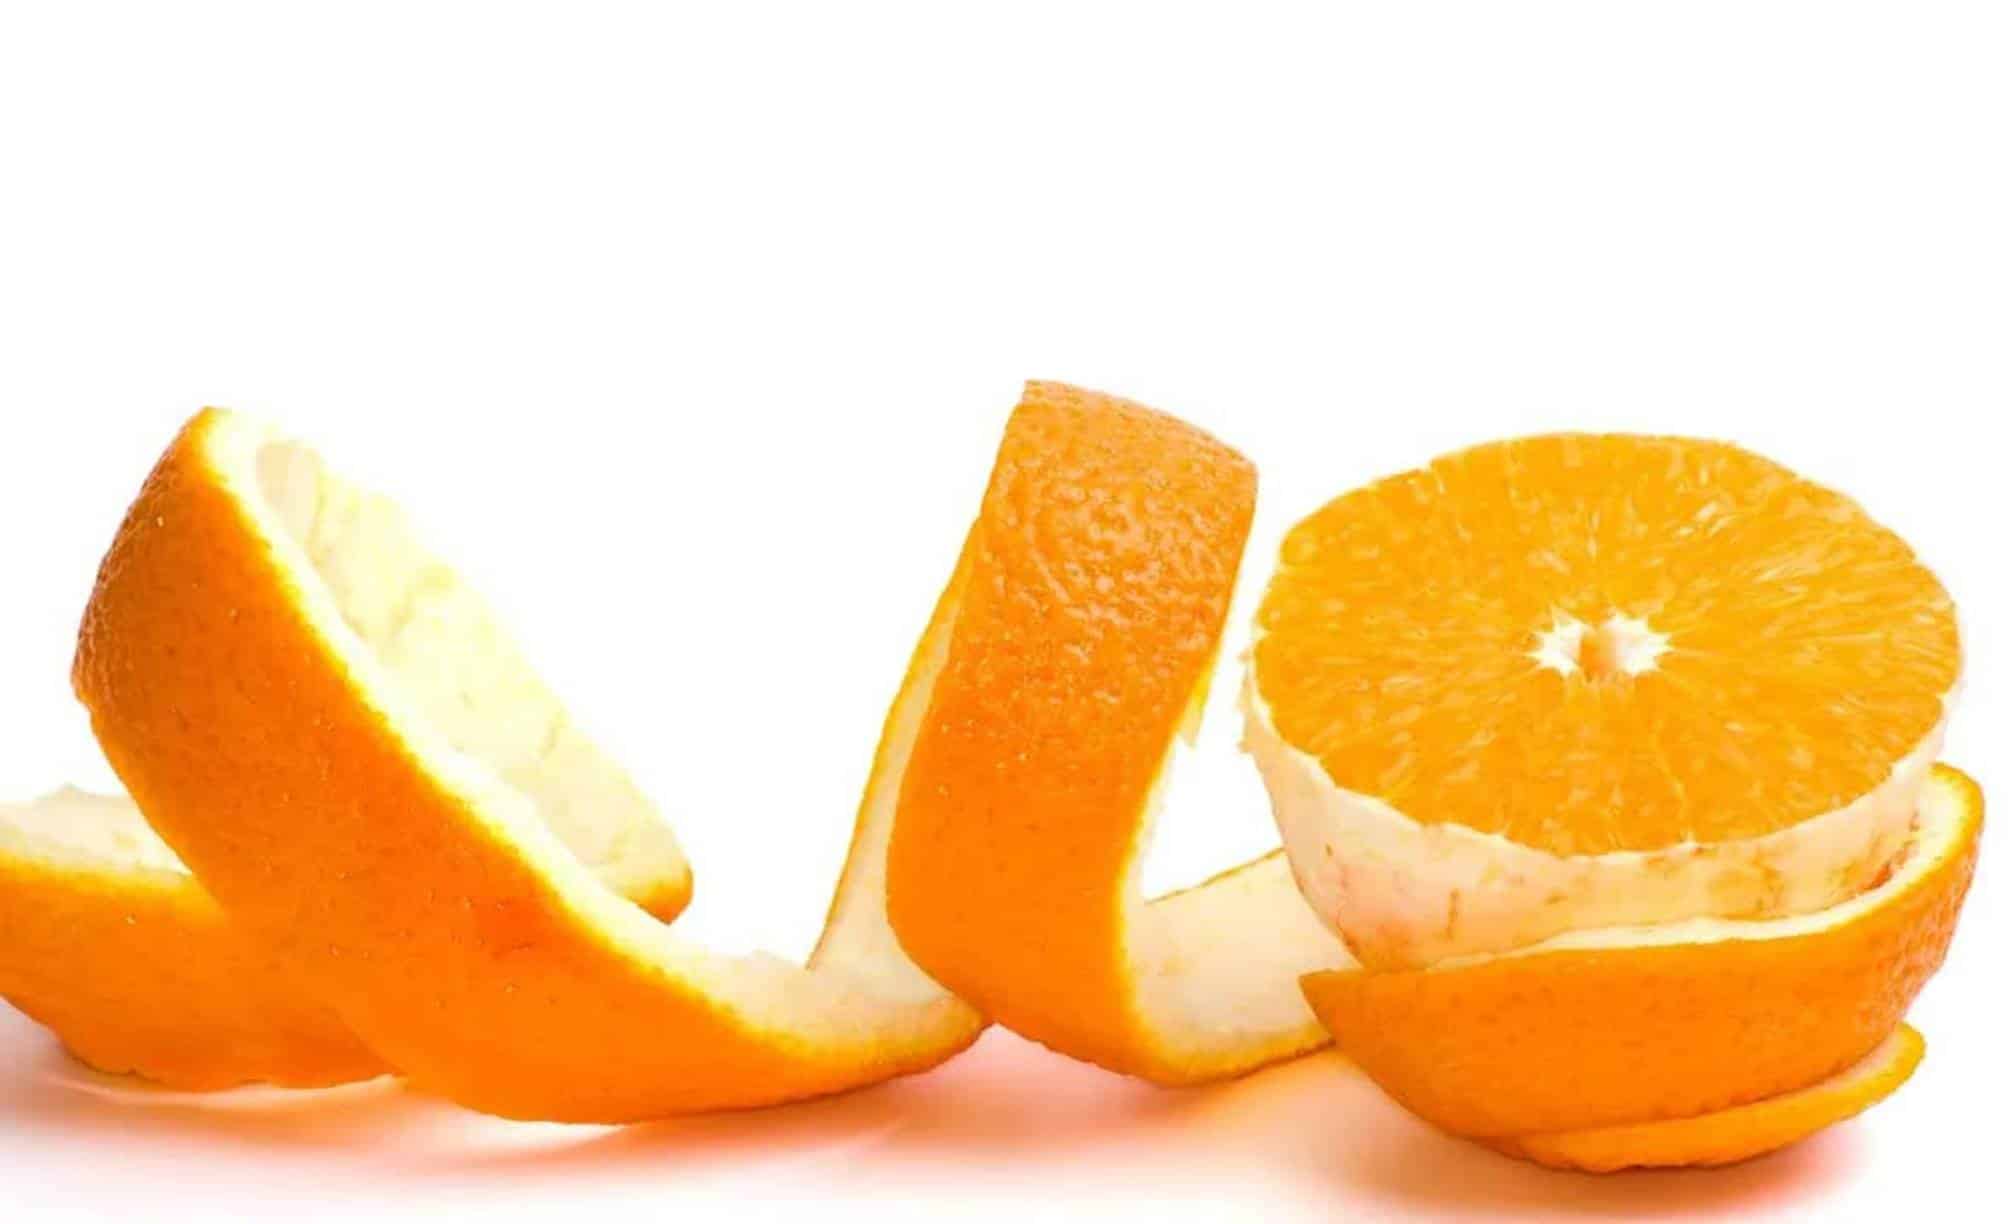 O truque que você provavelmente não sabia: como descascar laranjas rápido e sem esforço